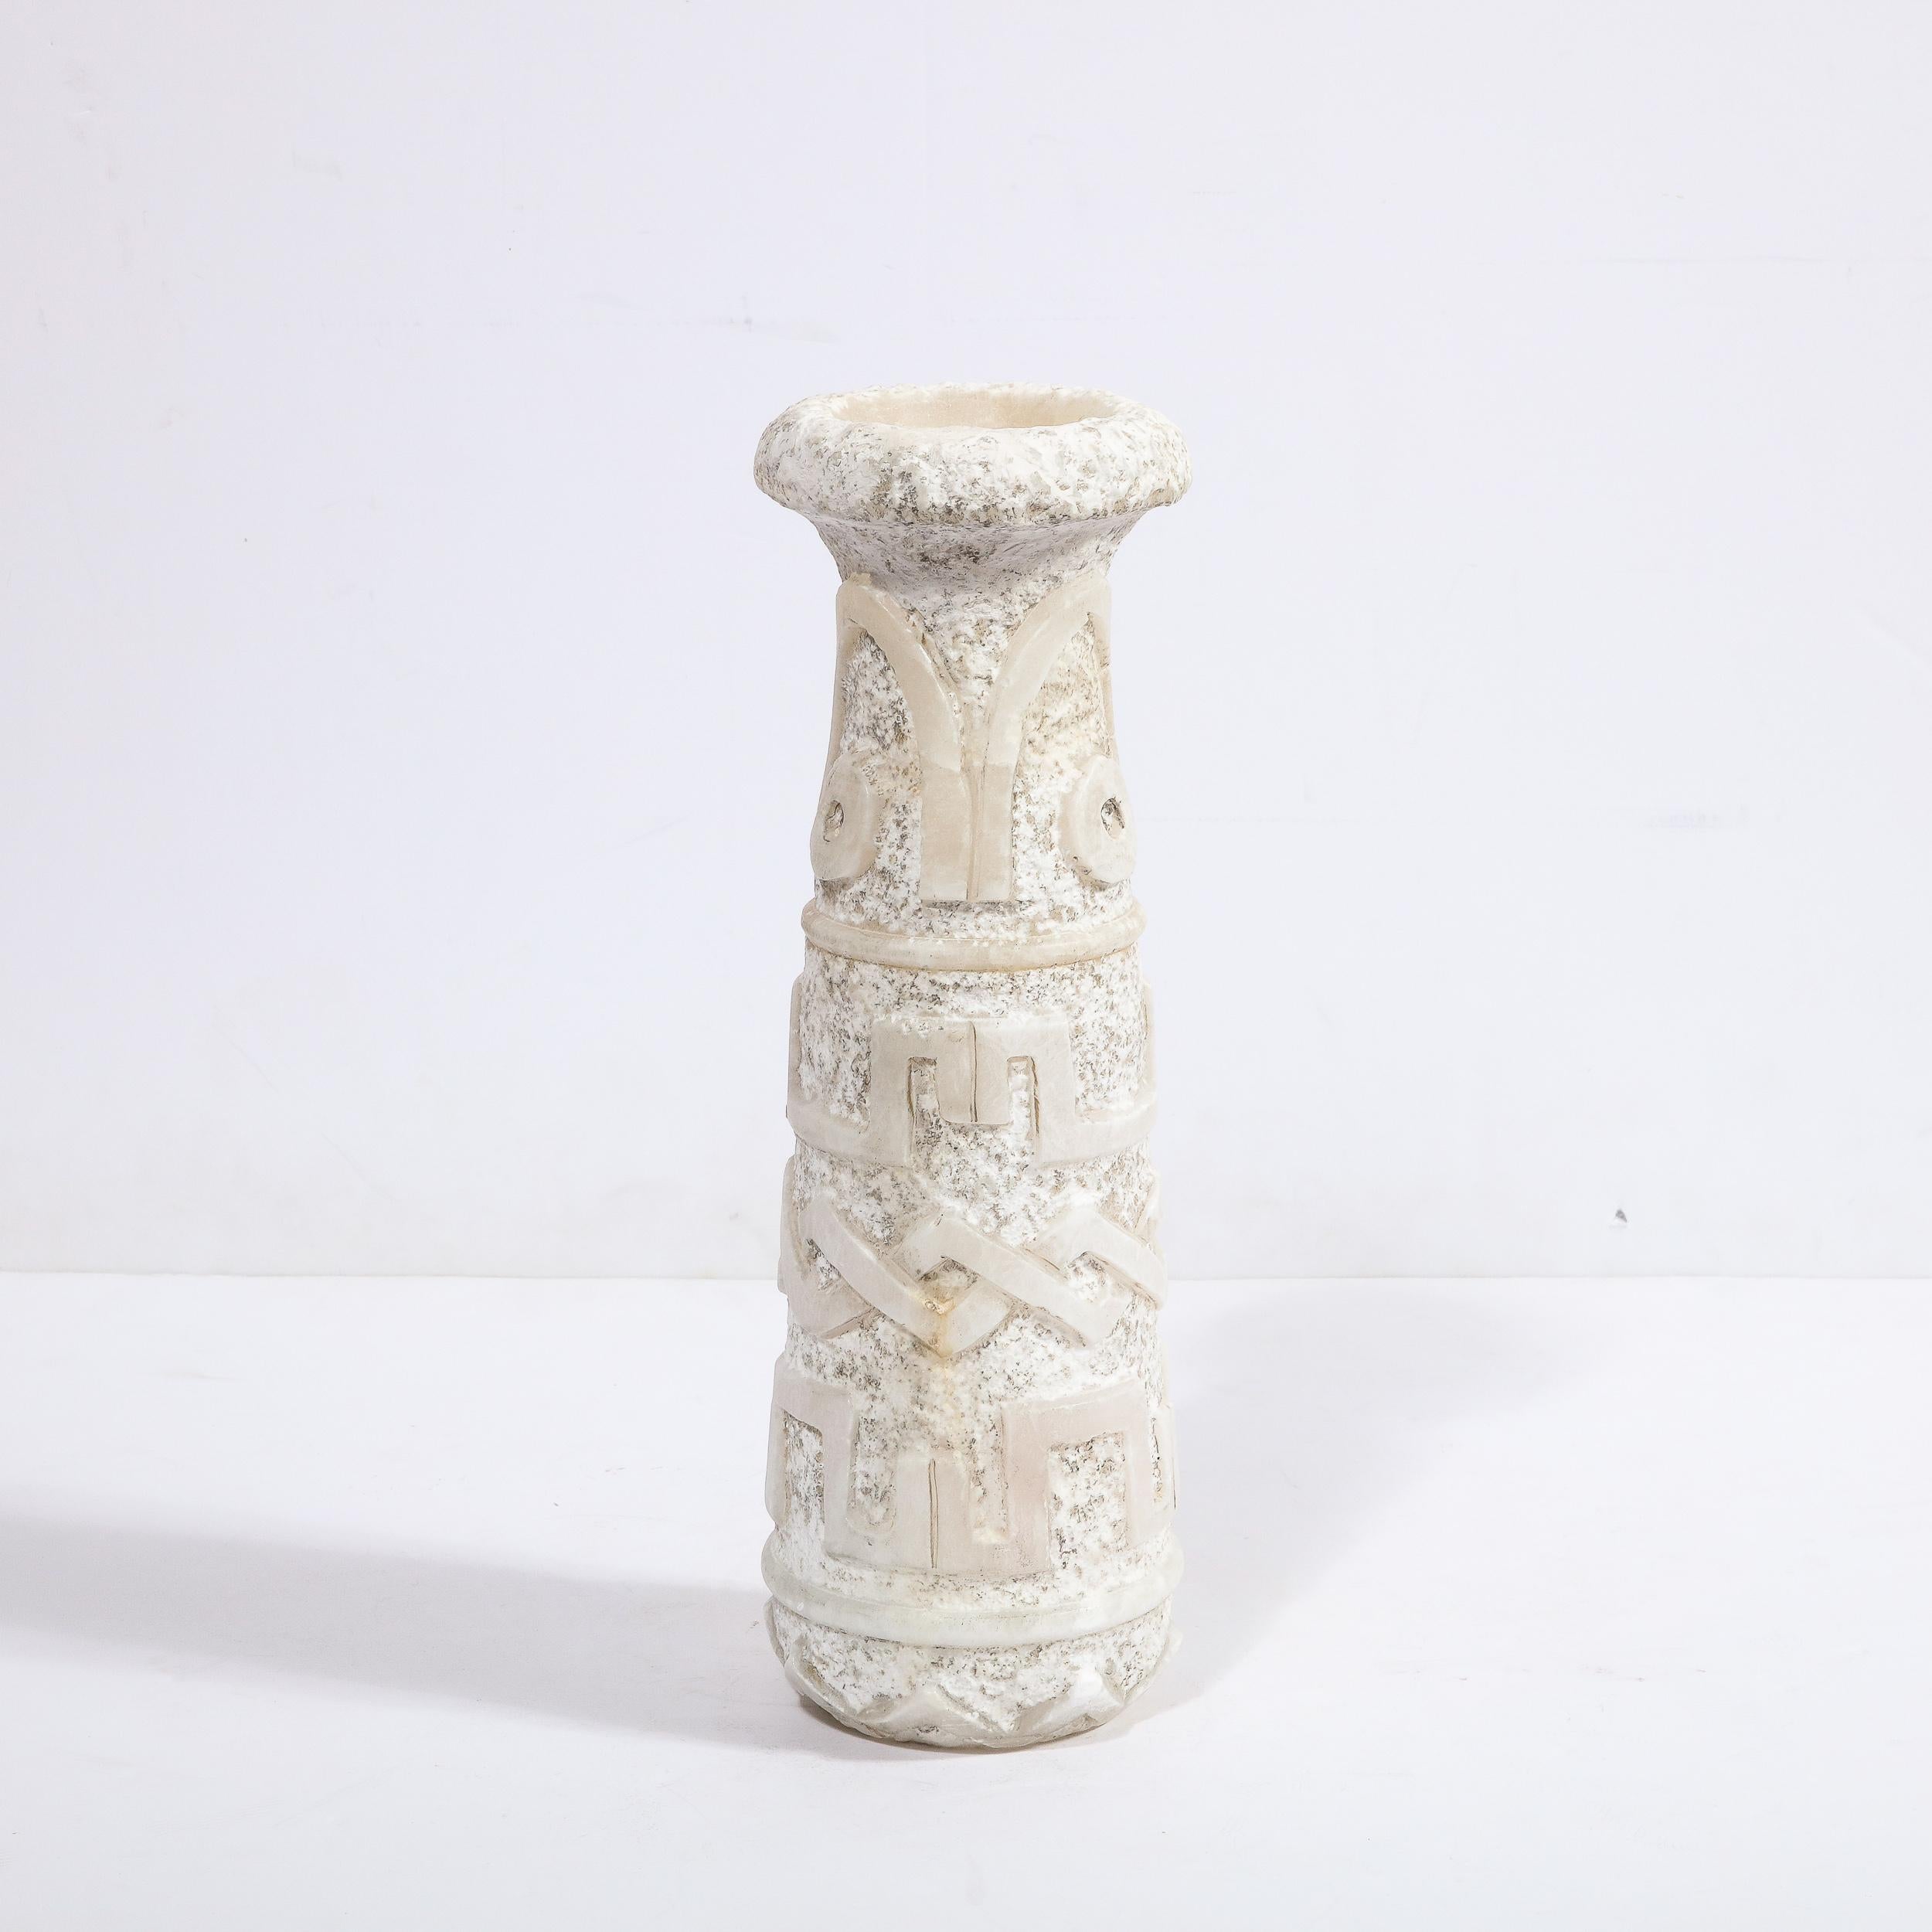 Ce vase primitiviste sophistiqué de style Mid Century Modern a été réalisé en France vers 1950. Elle présente un corps cylindrique qui se rétrécit vers le haut, avec une bouche évasée qui s'avance en porte-à-faux au-dessus du corps de la pièce, dans